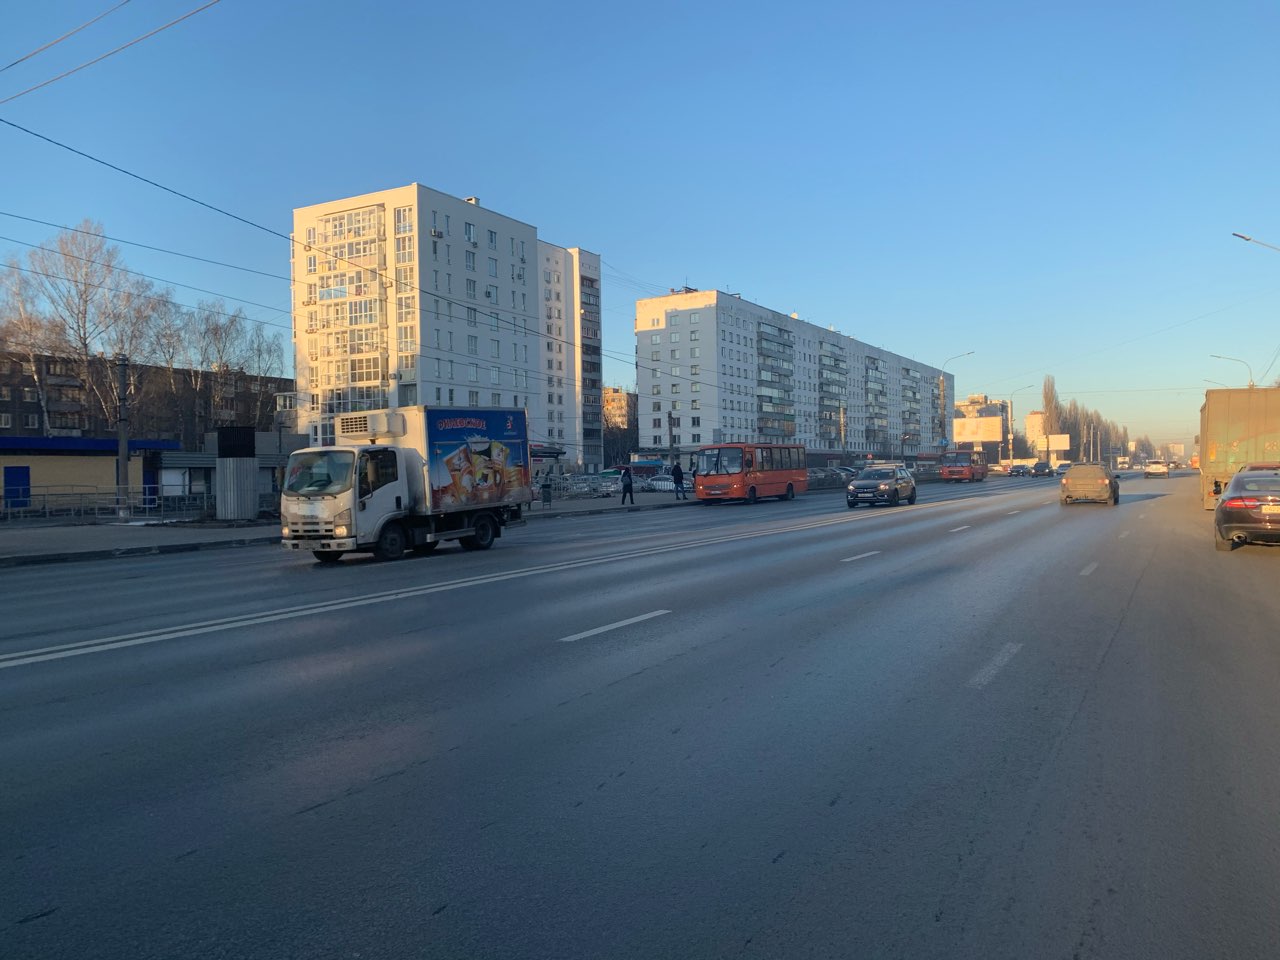 Проект дублера проспекта Ленина в Нижнем Новгороде подготовят в 2023 году  - фото 1